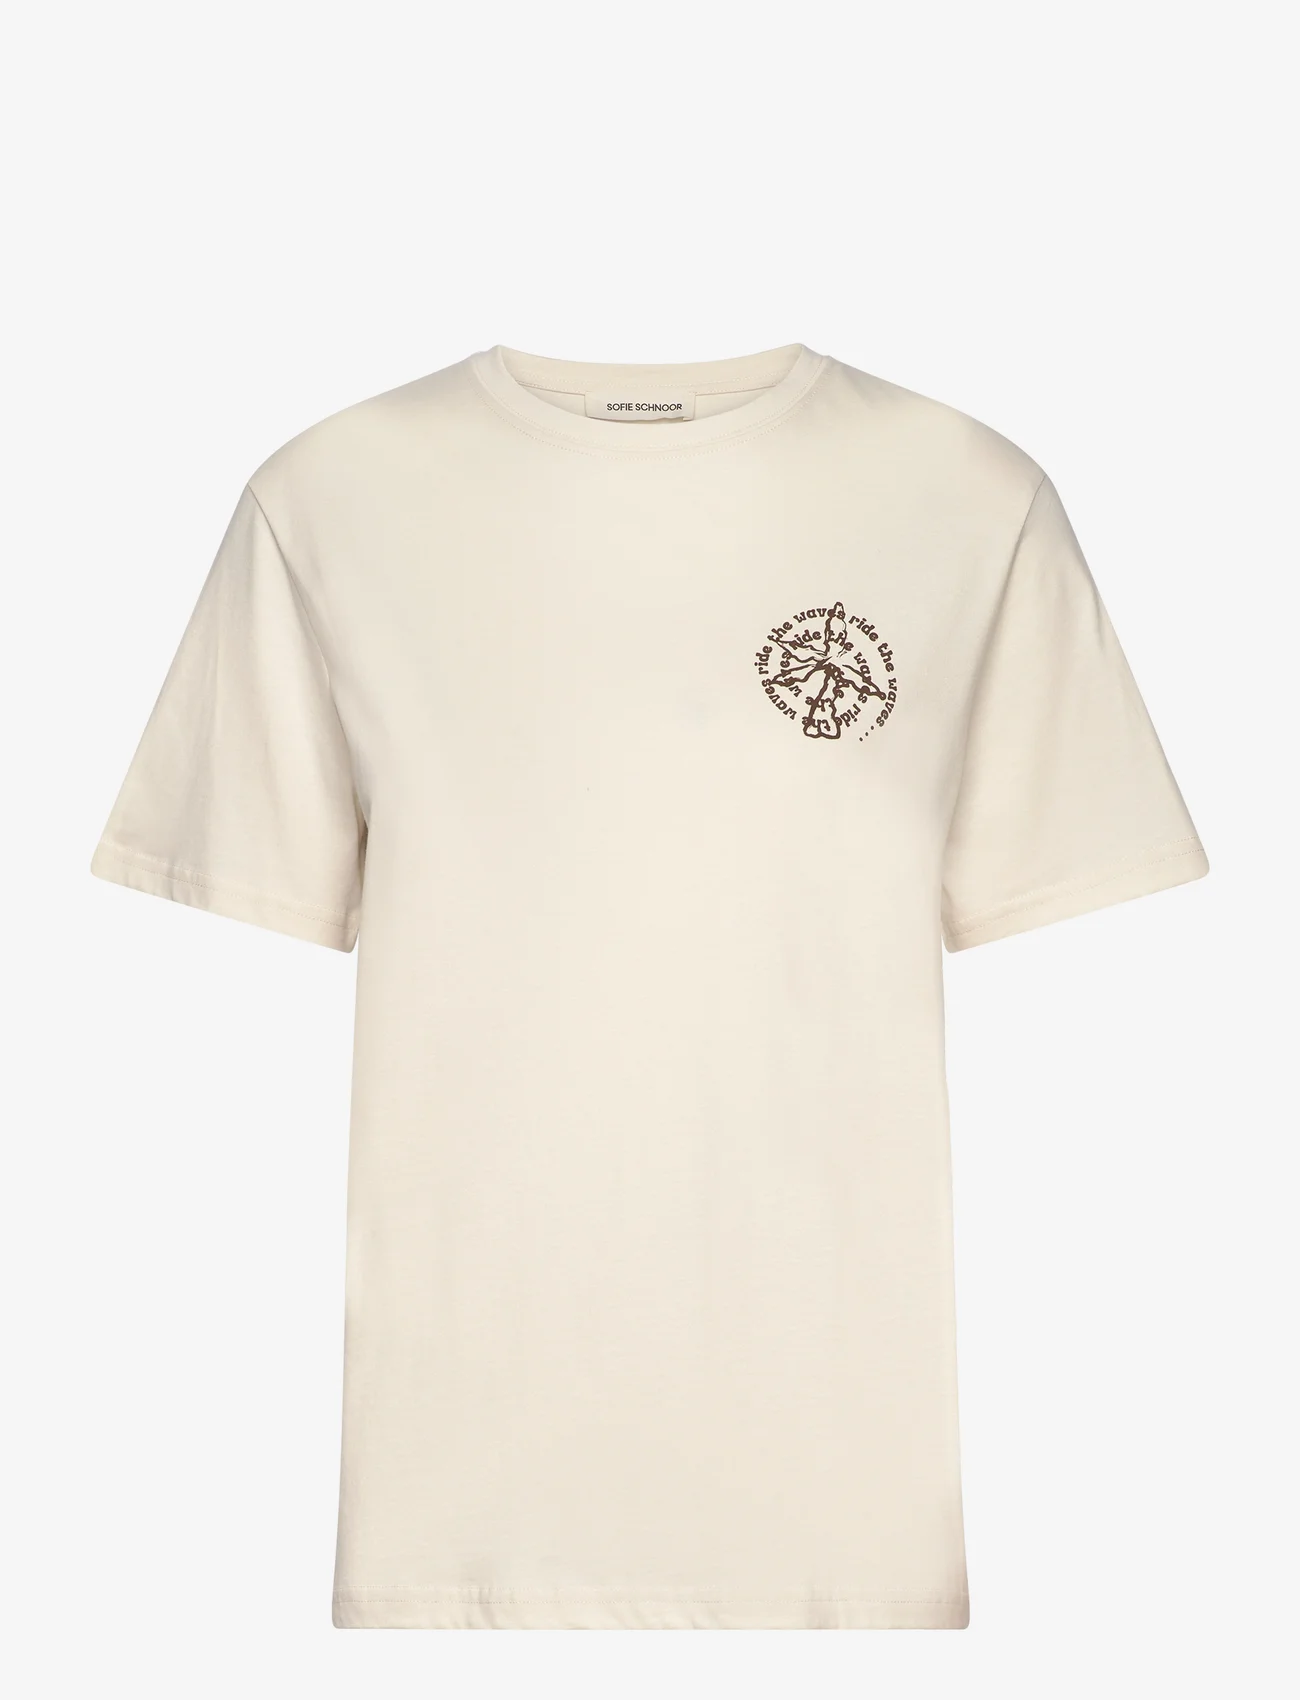 Sofie Schnoor - T-shirt - laveste priser - white alyssum - 0